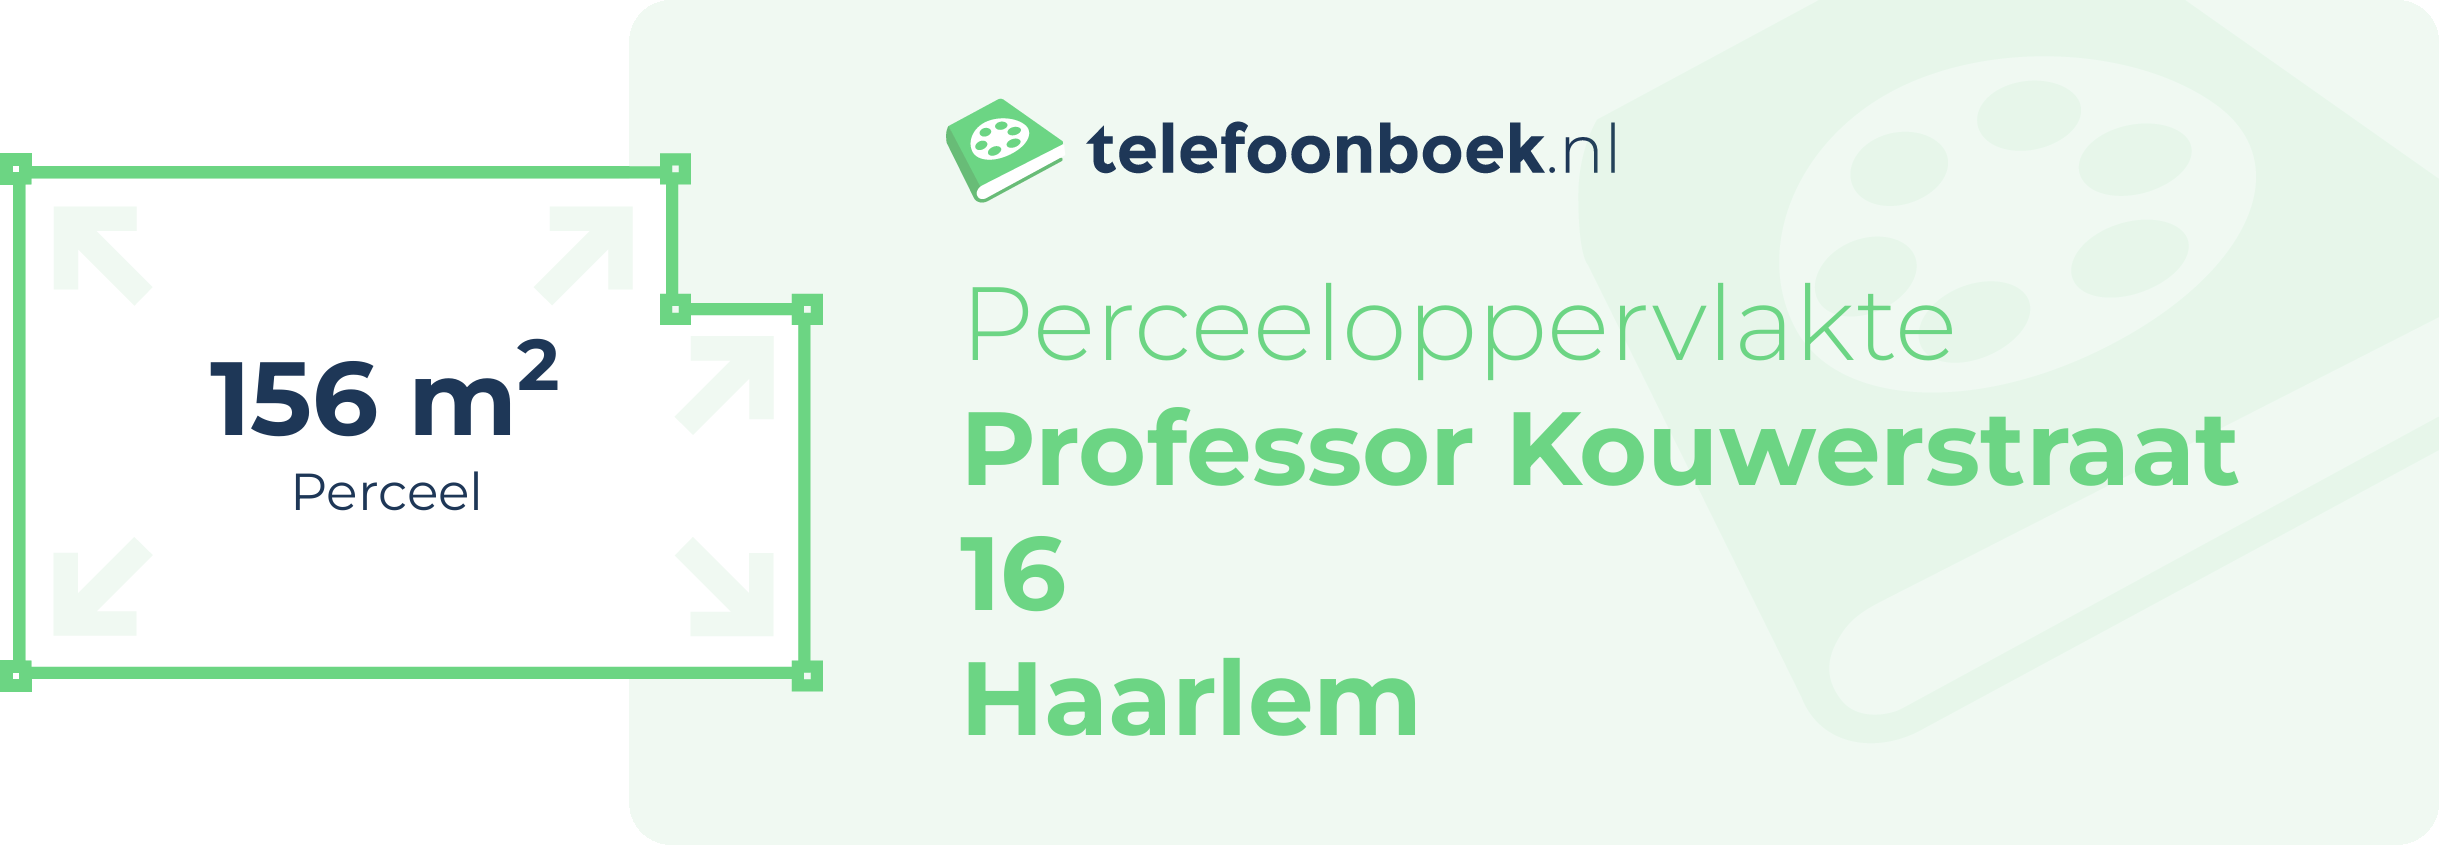 Perceeloppervlakte Professor Kouwerstraat 16 Haarlem